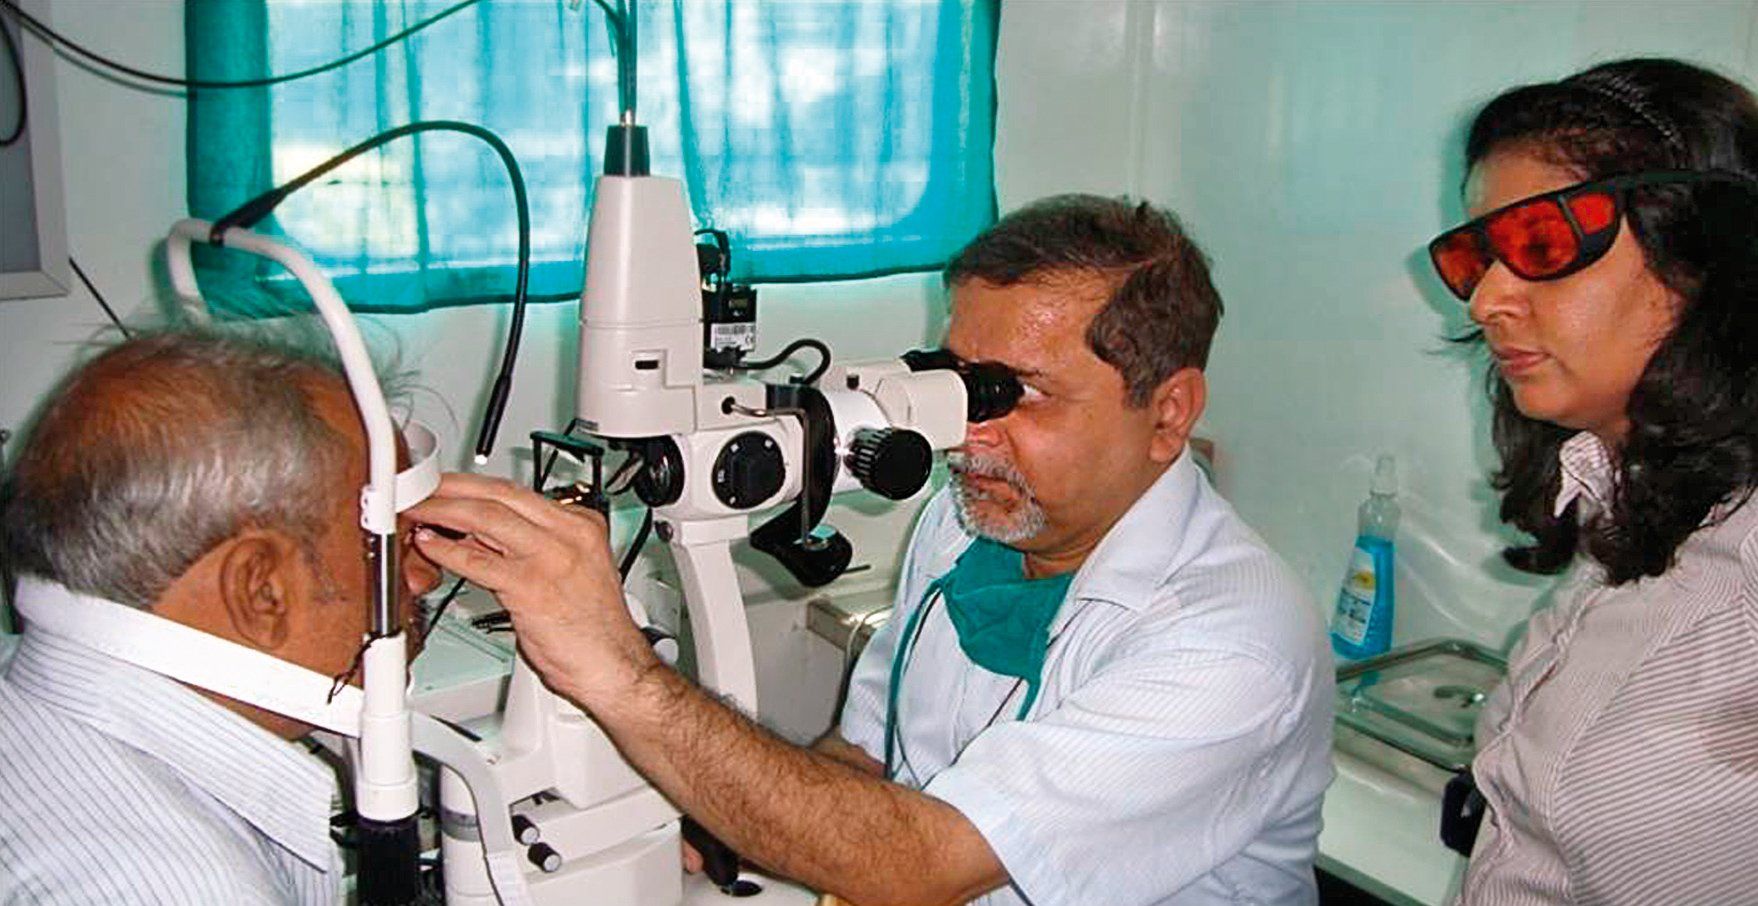 Labāko oftalmoloģisko klīniku vērtējums Rostovā pie Donas 2020. gadā